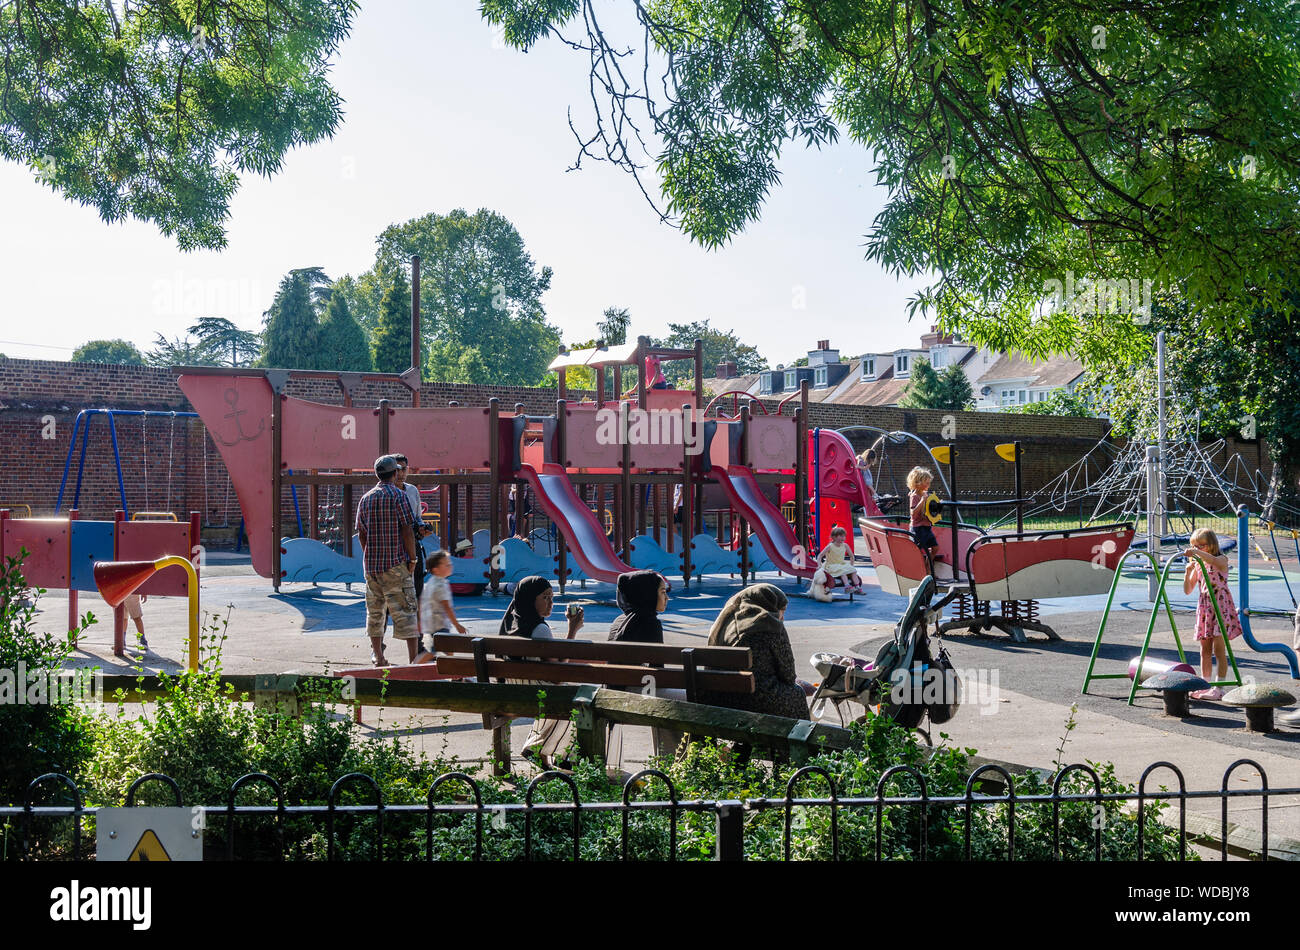 Les enfants jouent dans une aire de jeux pour enfants dans le parc dans la région de Marlow Higginson. Banque D'Images